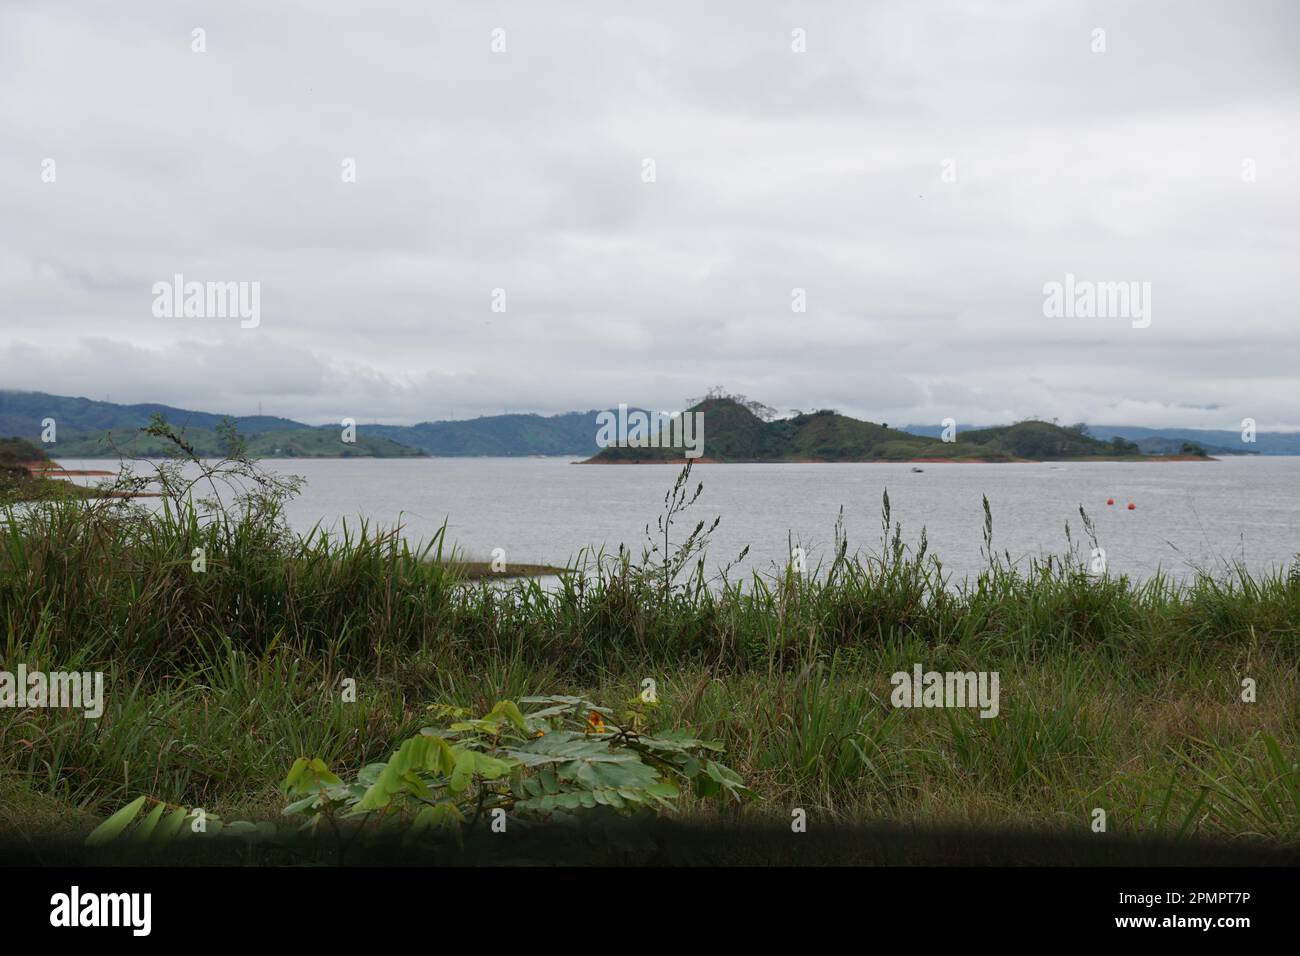 Grass, lake, mountain at chiapas, mexico Stock Photo